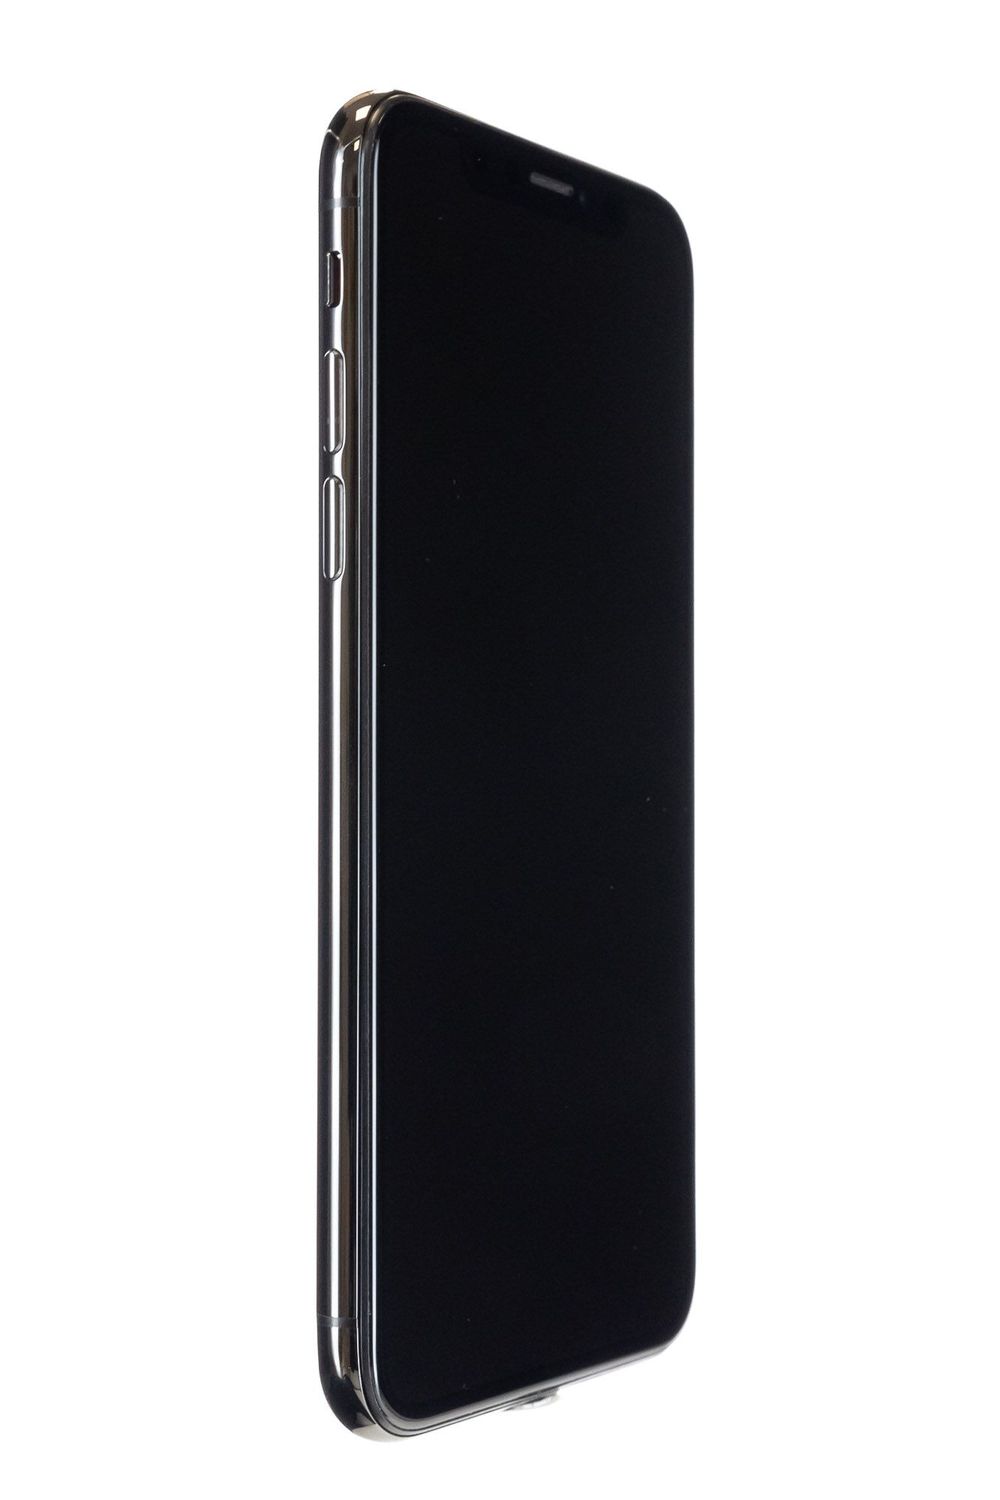 Κινητό τηλέφωνο Apple iPhone X, Space Grey, 256 GB, Foarte Bun